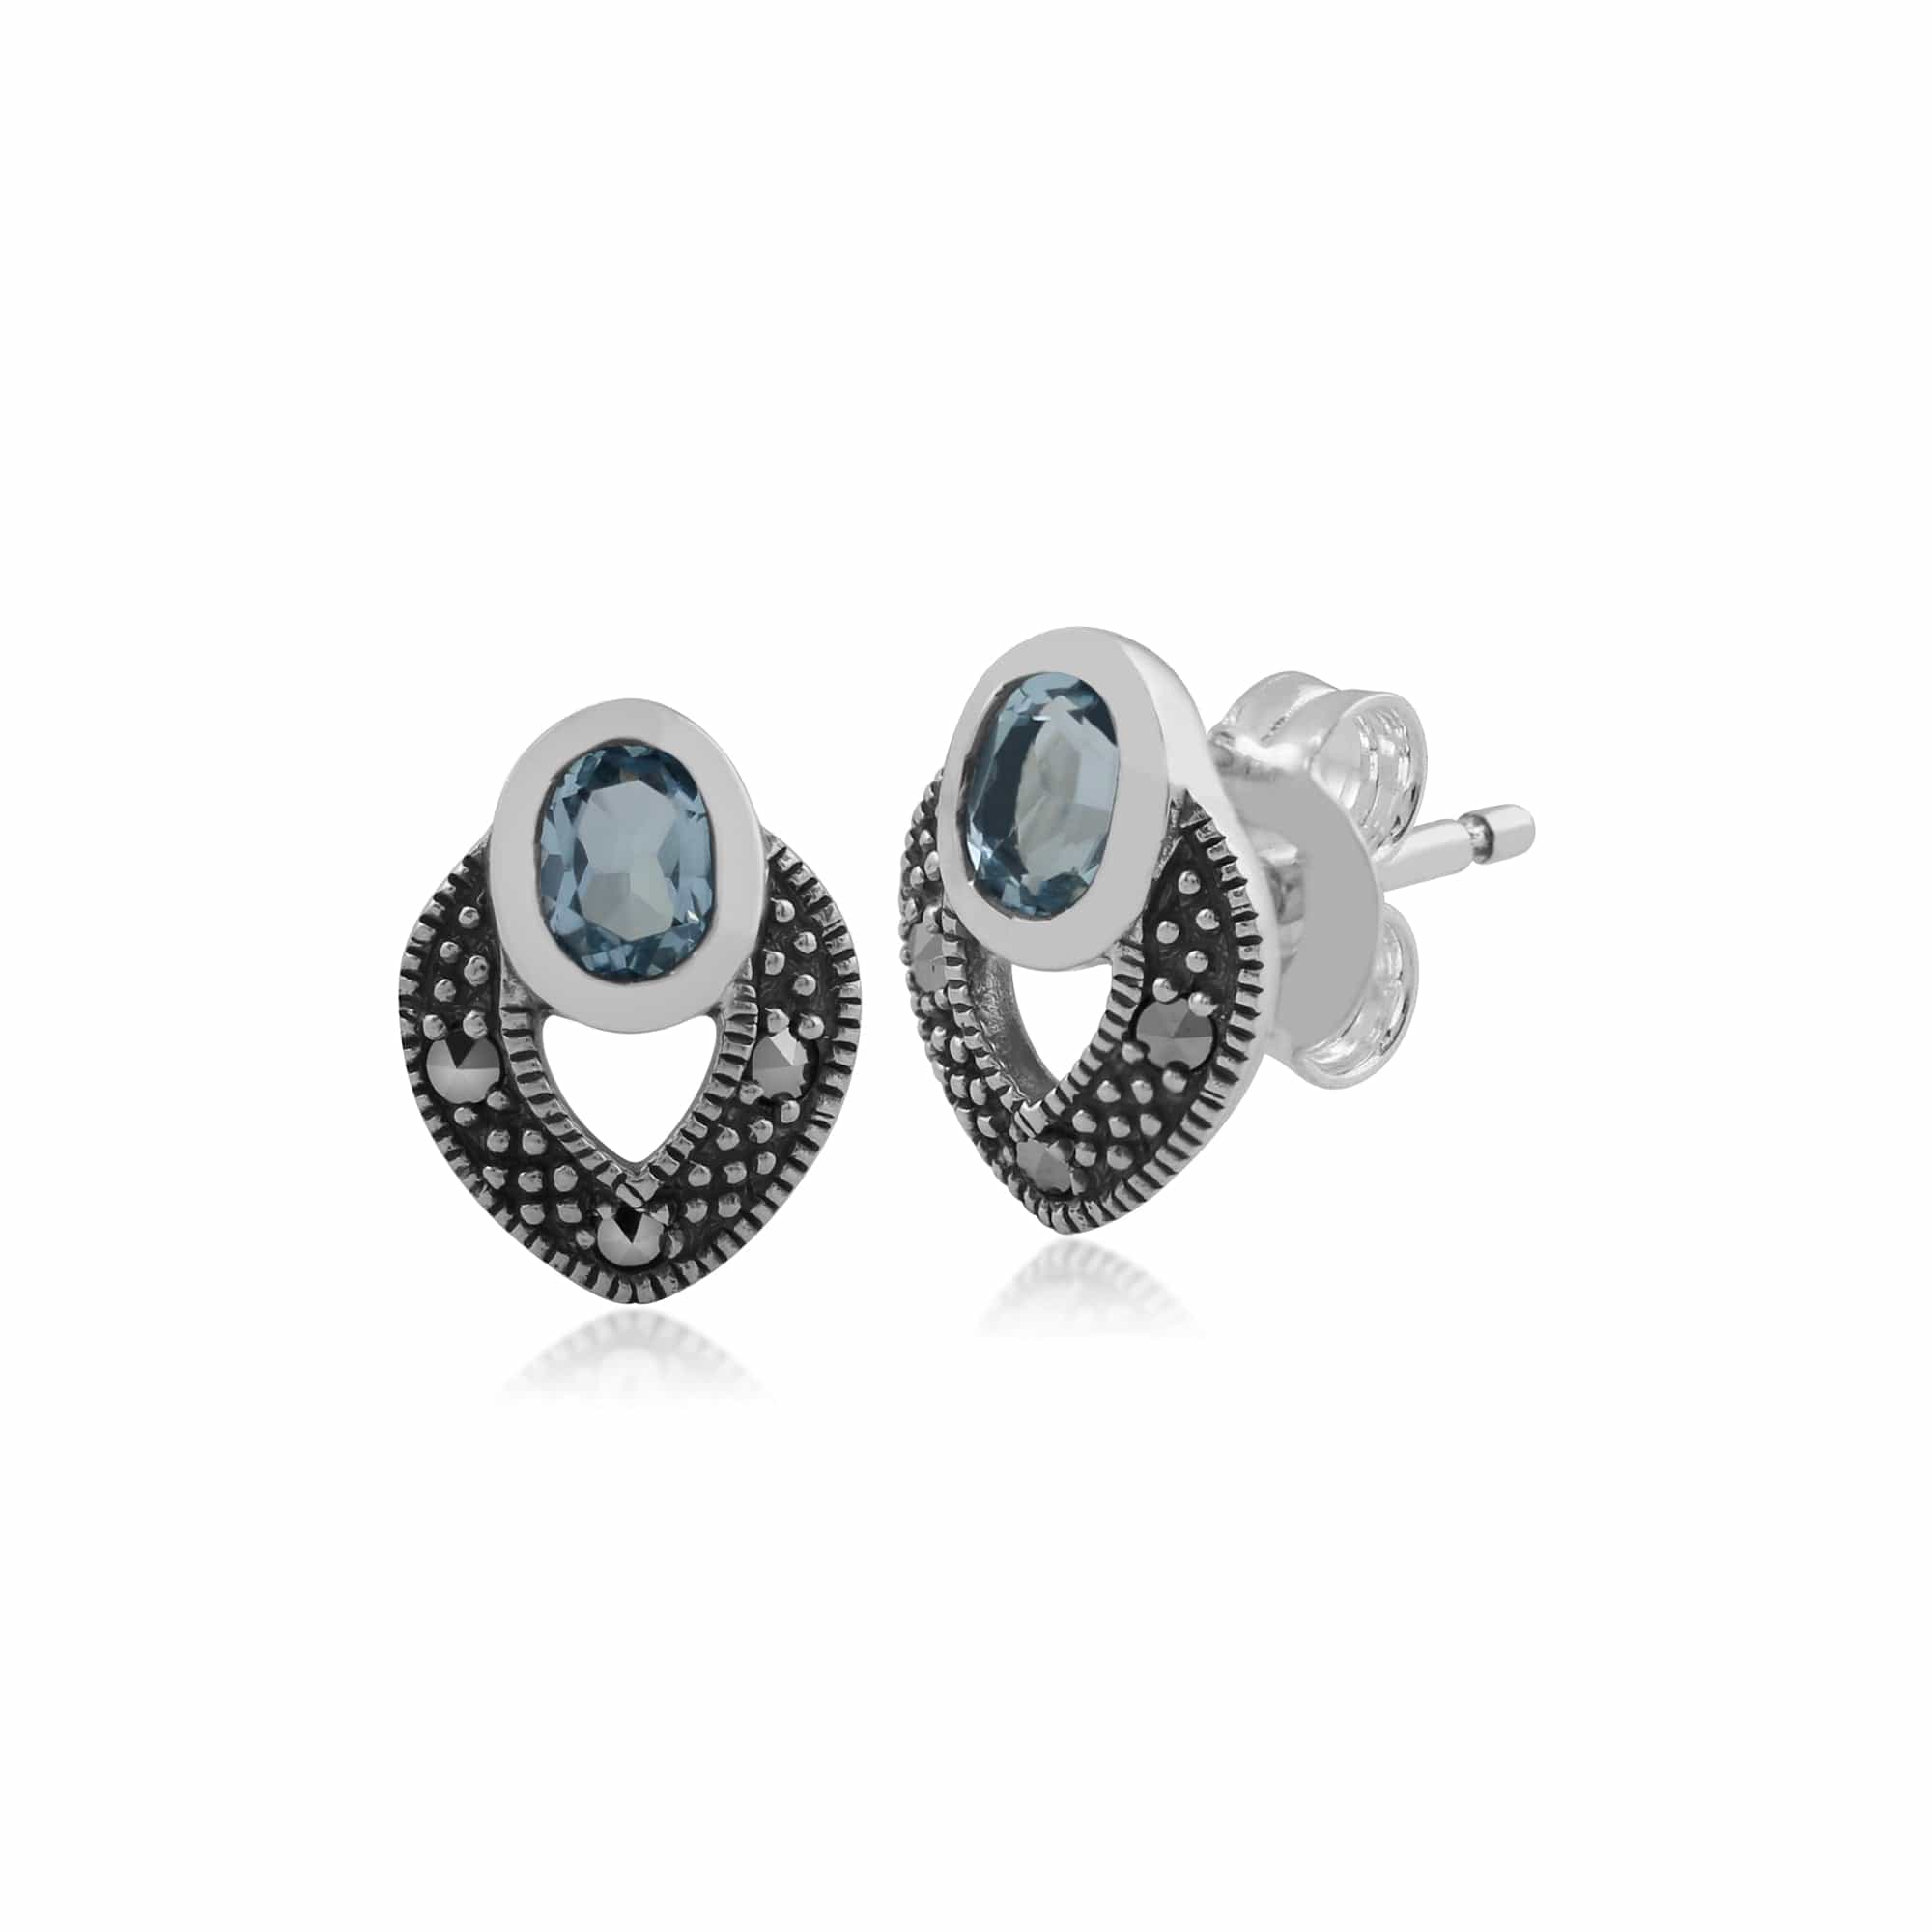 Art Deco Style Oval Blue Topaz & Marcasite Stud Earrings & Pendant Set in 925 Sterling Silver - Gemondo